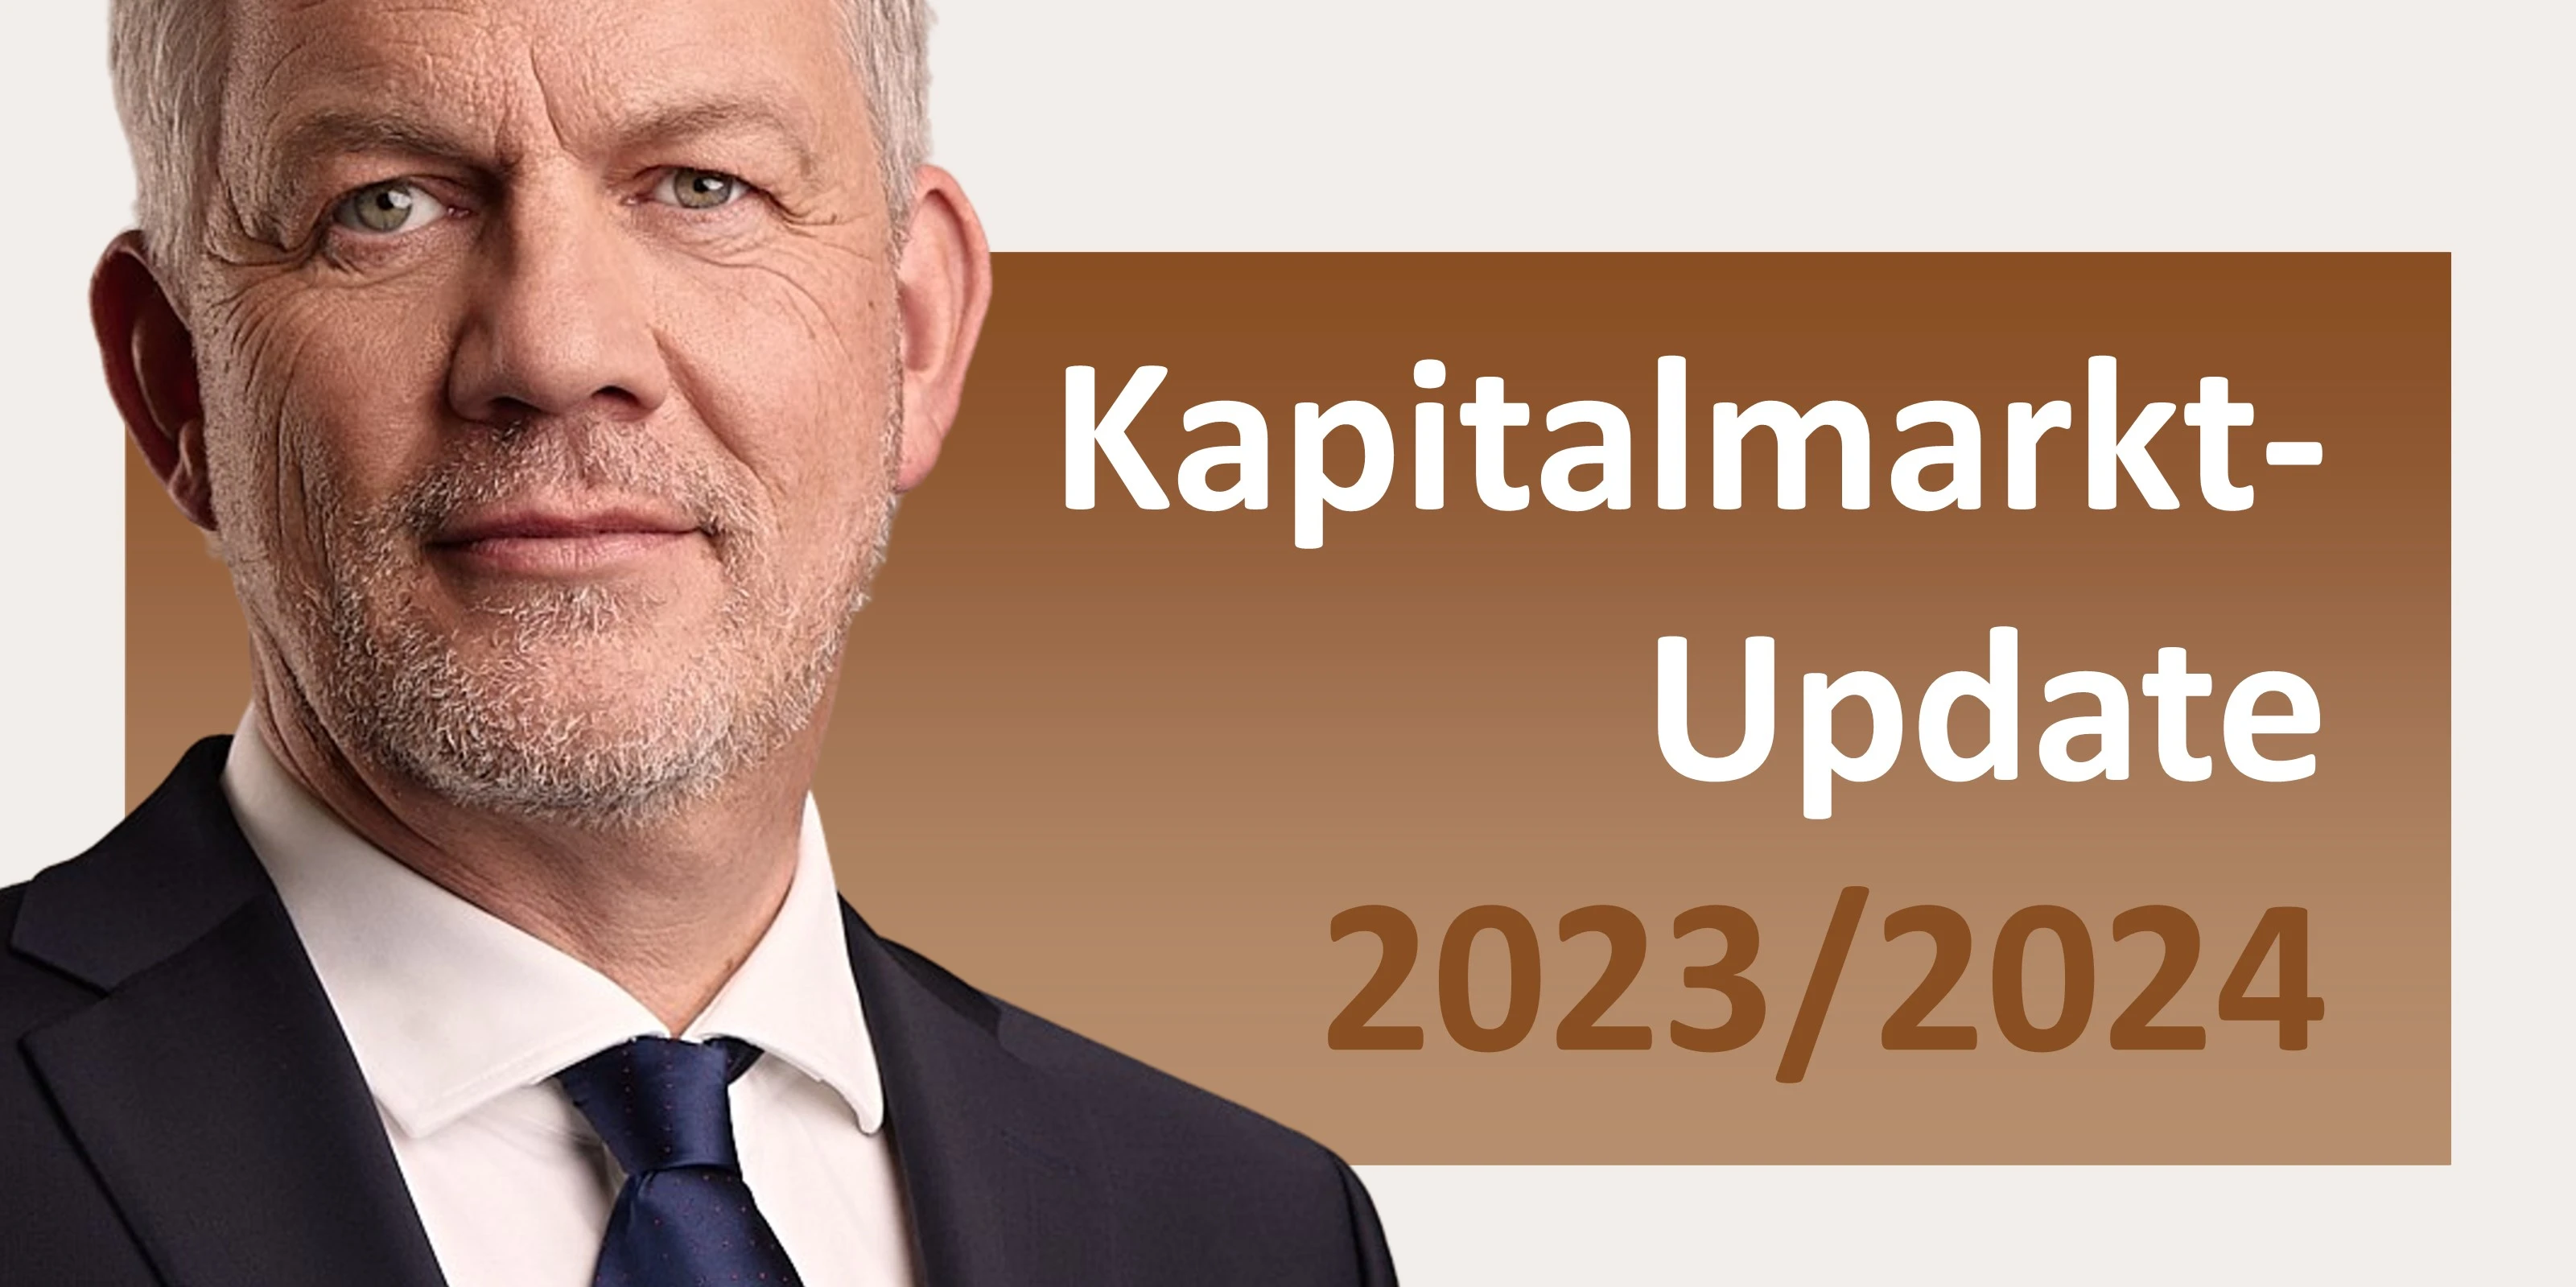 Kapitalmarkt-Update 2023 & 2024 von Heiko Böhmer